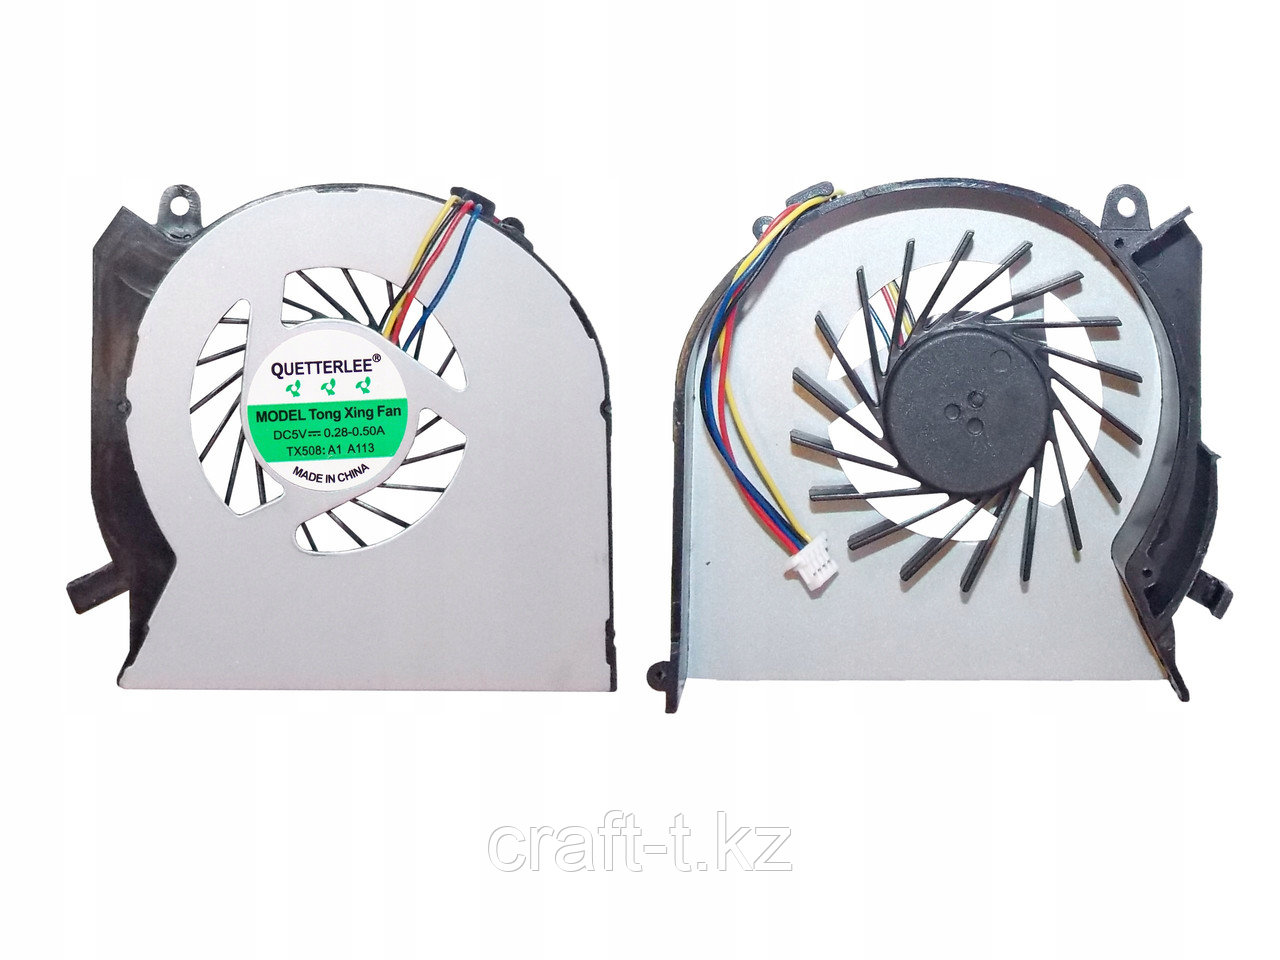 Система охлаждения (Fan), для ноутбука   Hp Pavilion DV6-7000